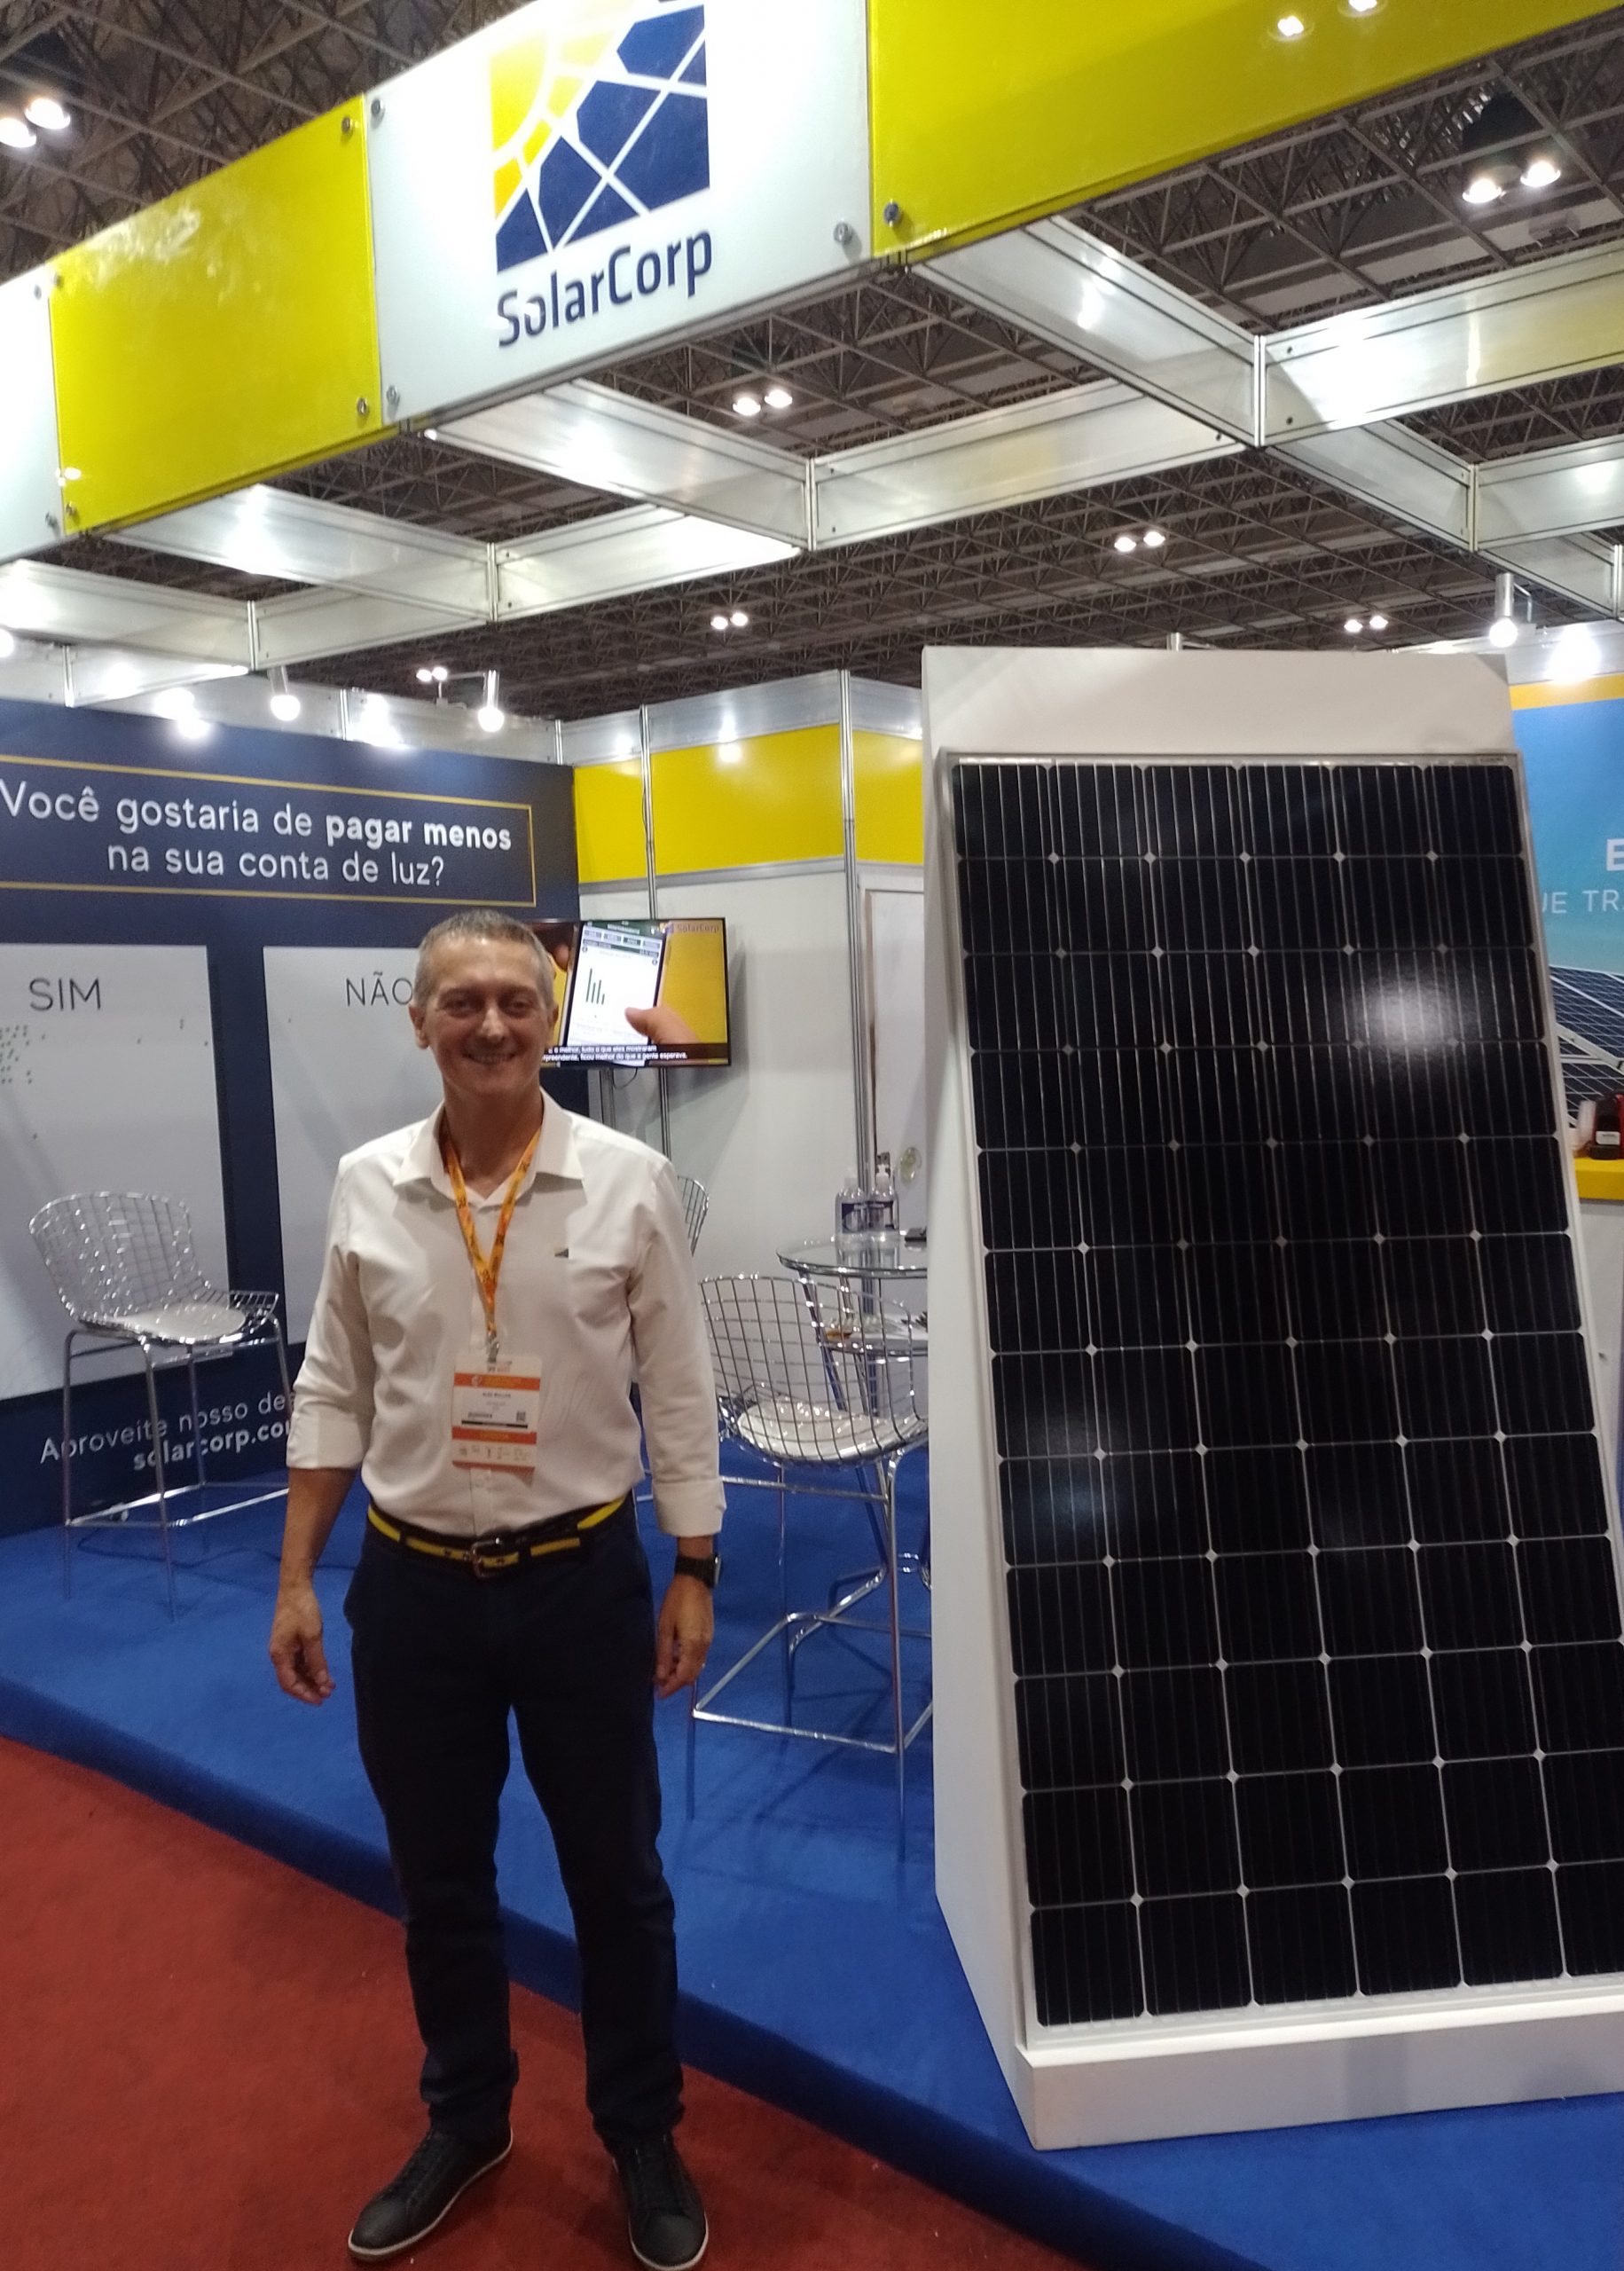 Energia solar fotovoltaica na construção: CEO da SolarCorp, Alex Bullos fala das oportunidades para construtores